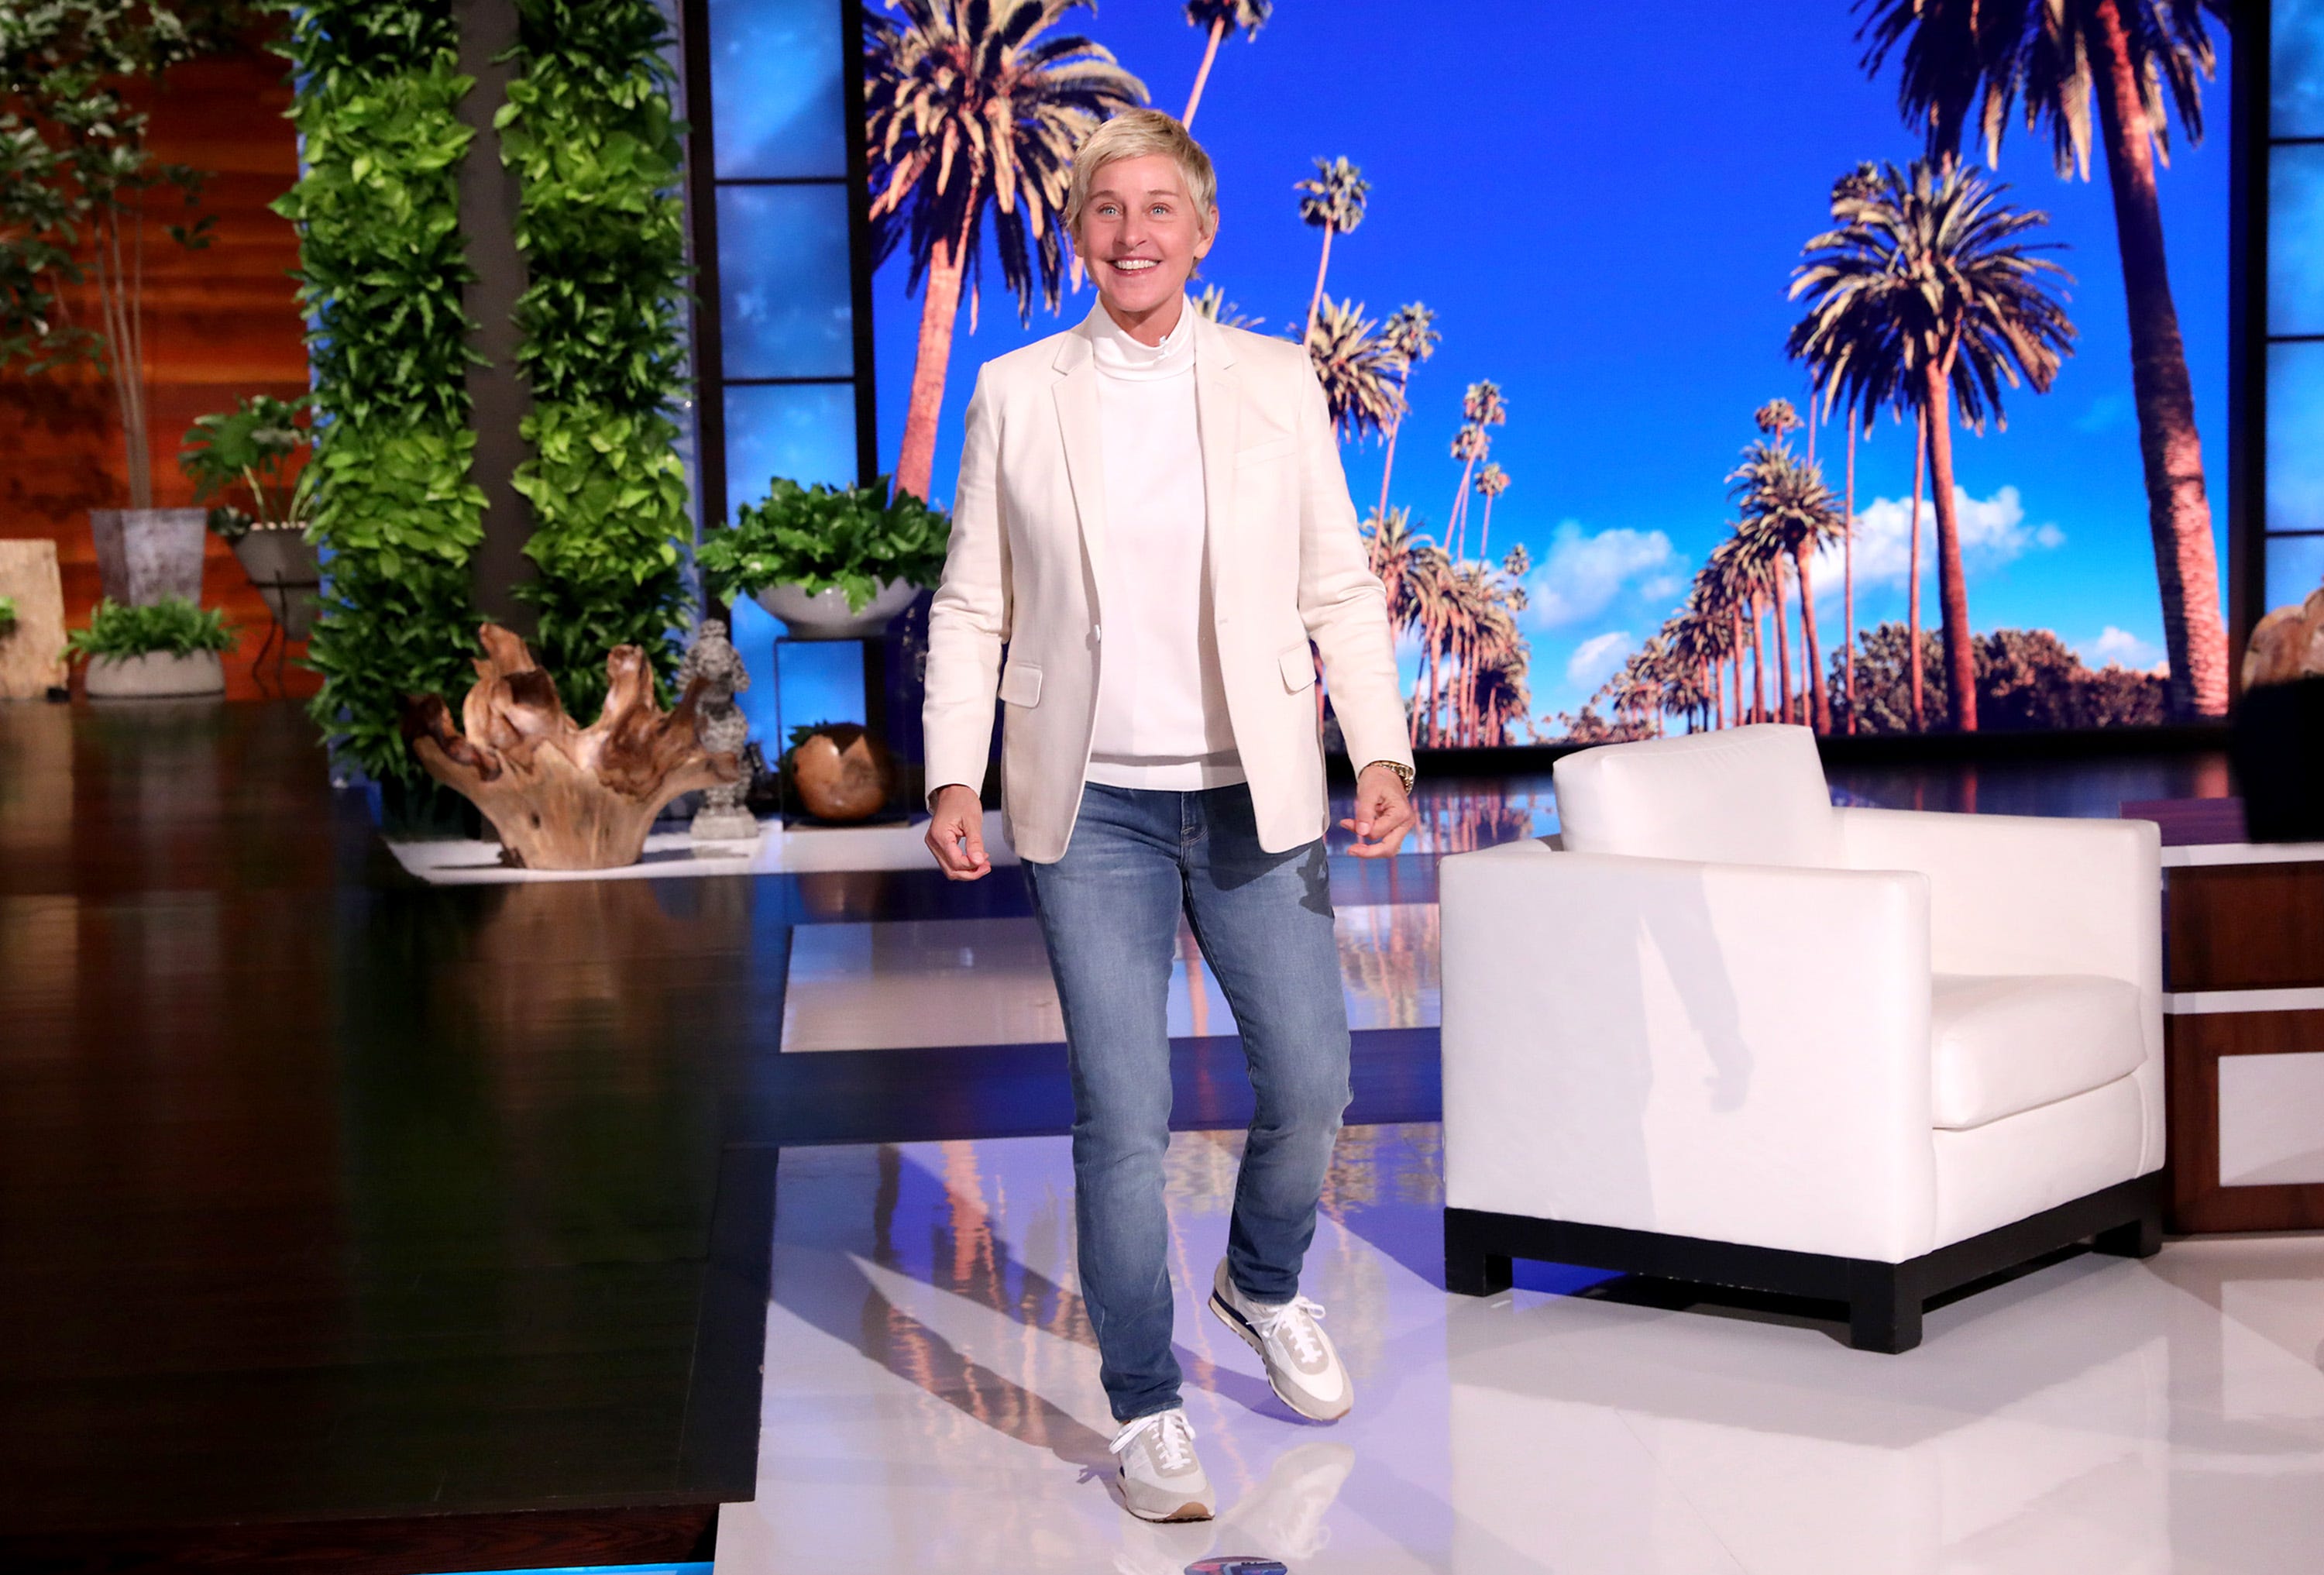 Ellen DeGeneres Show' to welcome back live in-studio audience